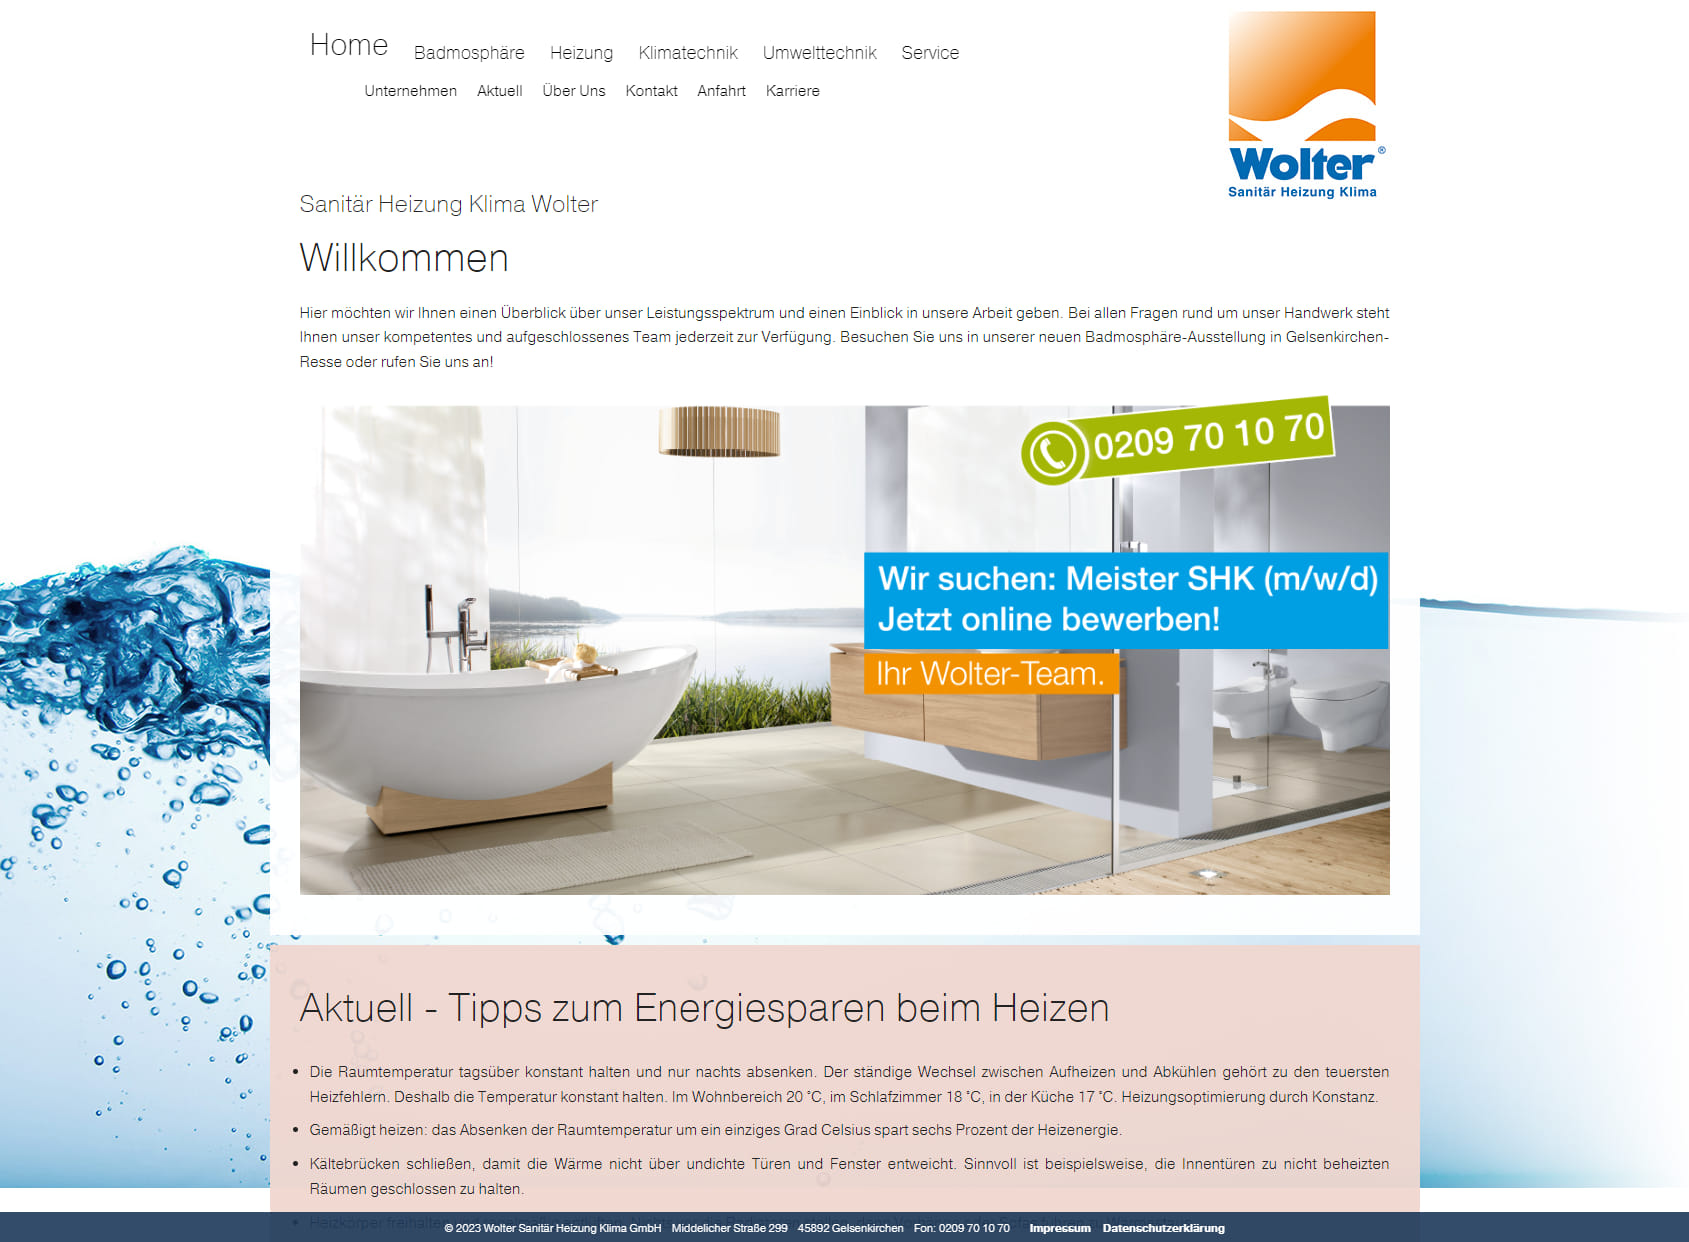 Wolter Sanitär-Heizung-Klima GmbH